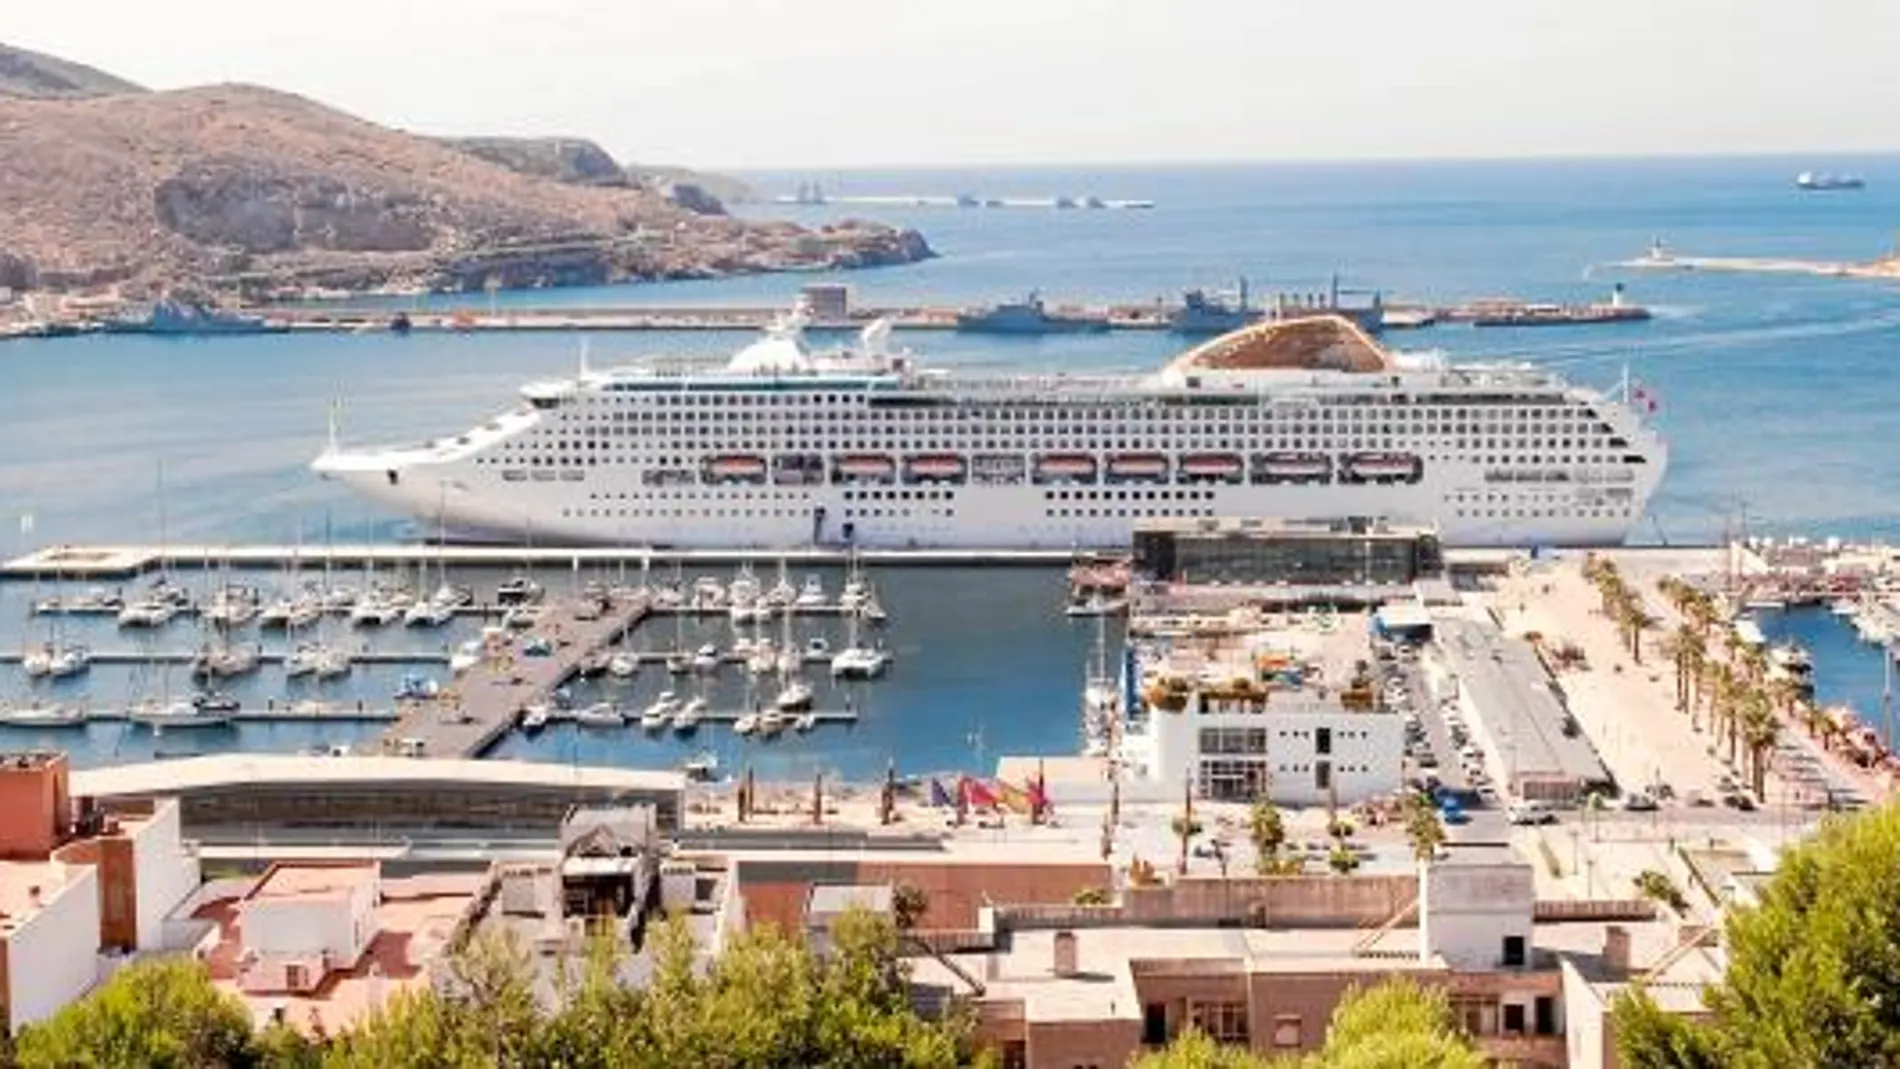 El puerto de la ciudad cartagenera aspira a pasar a ser un polo de salida y destino de cruceros después de su buen rendimiento como zona de escala para descanso de los turistas